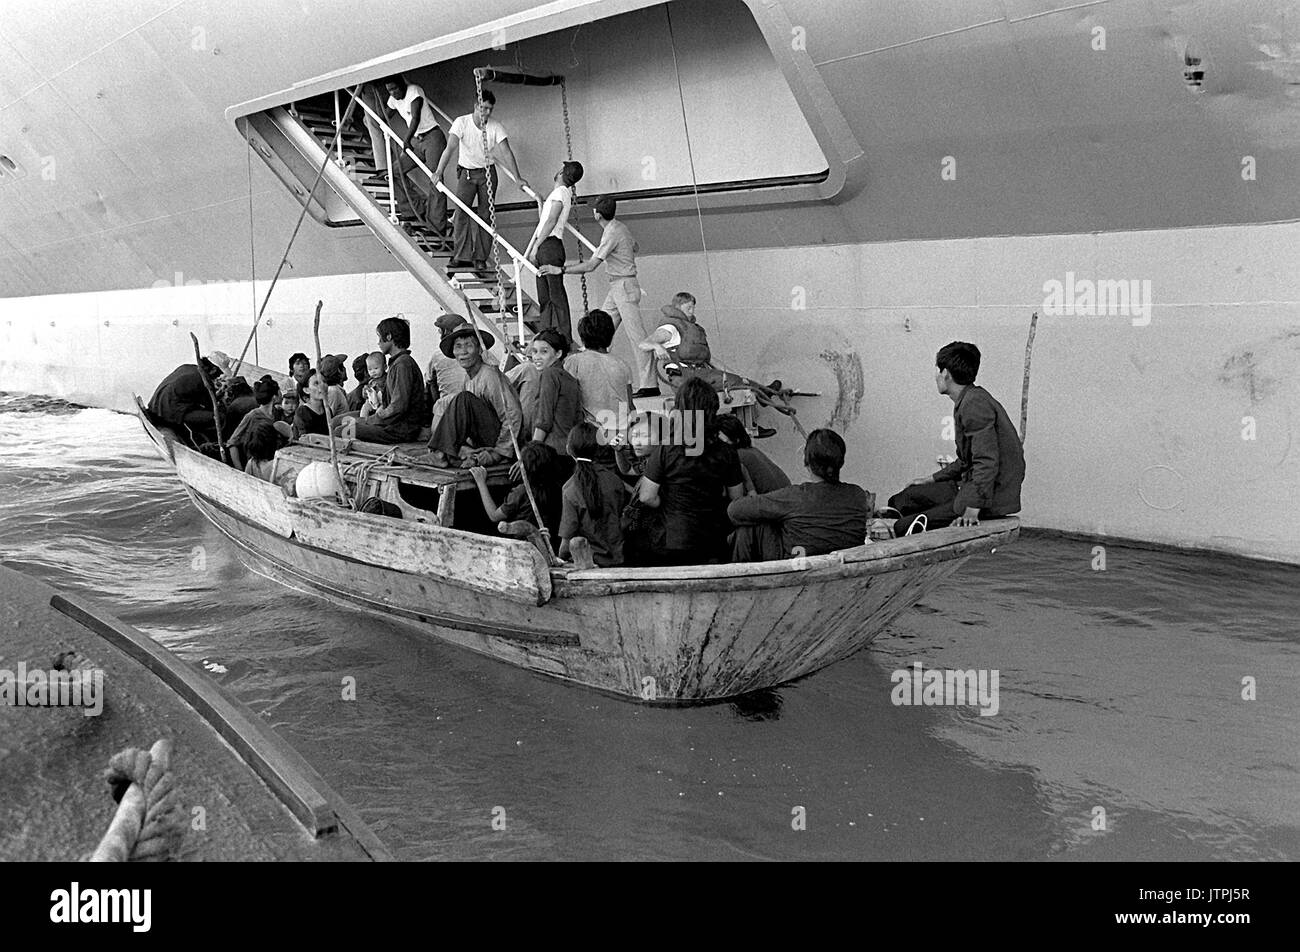 Vietnamesische Flüchtlinge vorbereiten, an Bord der USS BLUE RIDGE (LCC-19) kommen. Die Flüchtlinge wurden gerettet durch den amphibischen Kommando Schiff 350 Meilen nordöstlich von Cam Ranh Bay, Vietnam, nach acht Tage auf See in einem 35-Fuß-Boot. Stockfoto